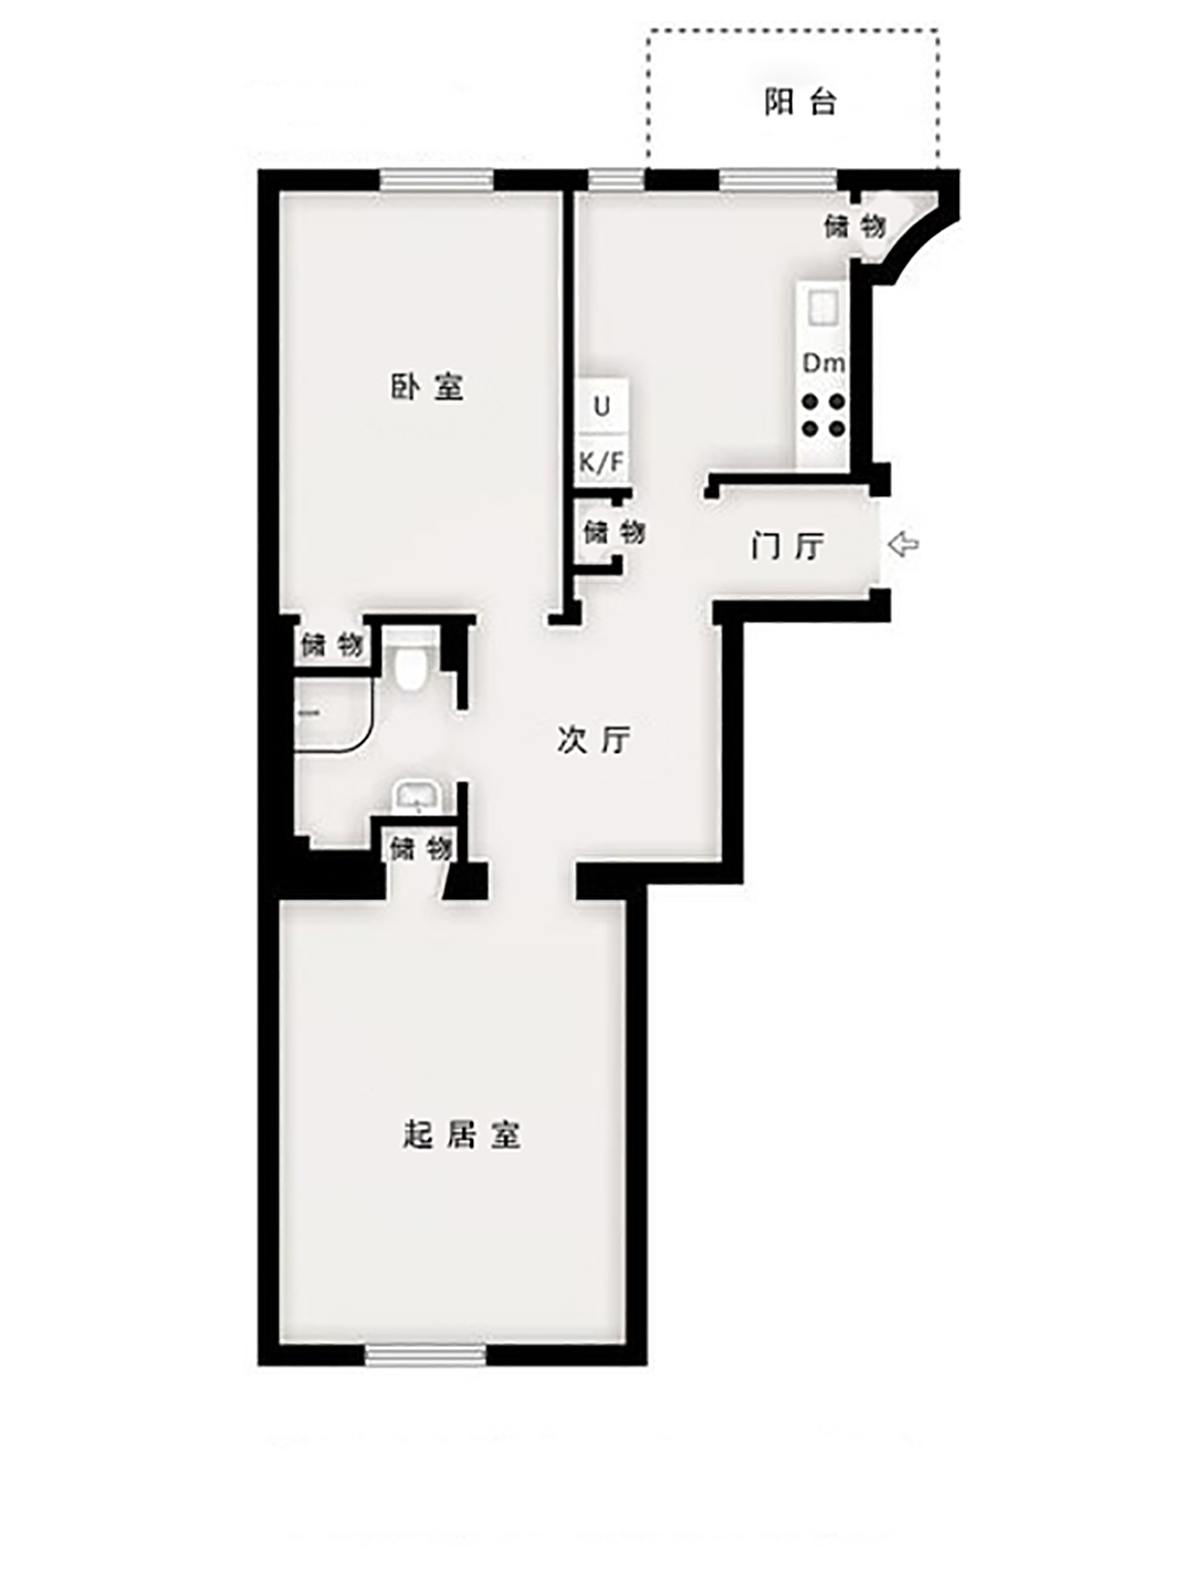 现代简约风格-一室两厅现代公寓装修设计